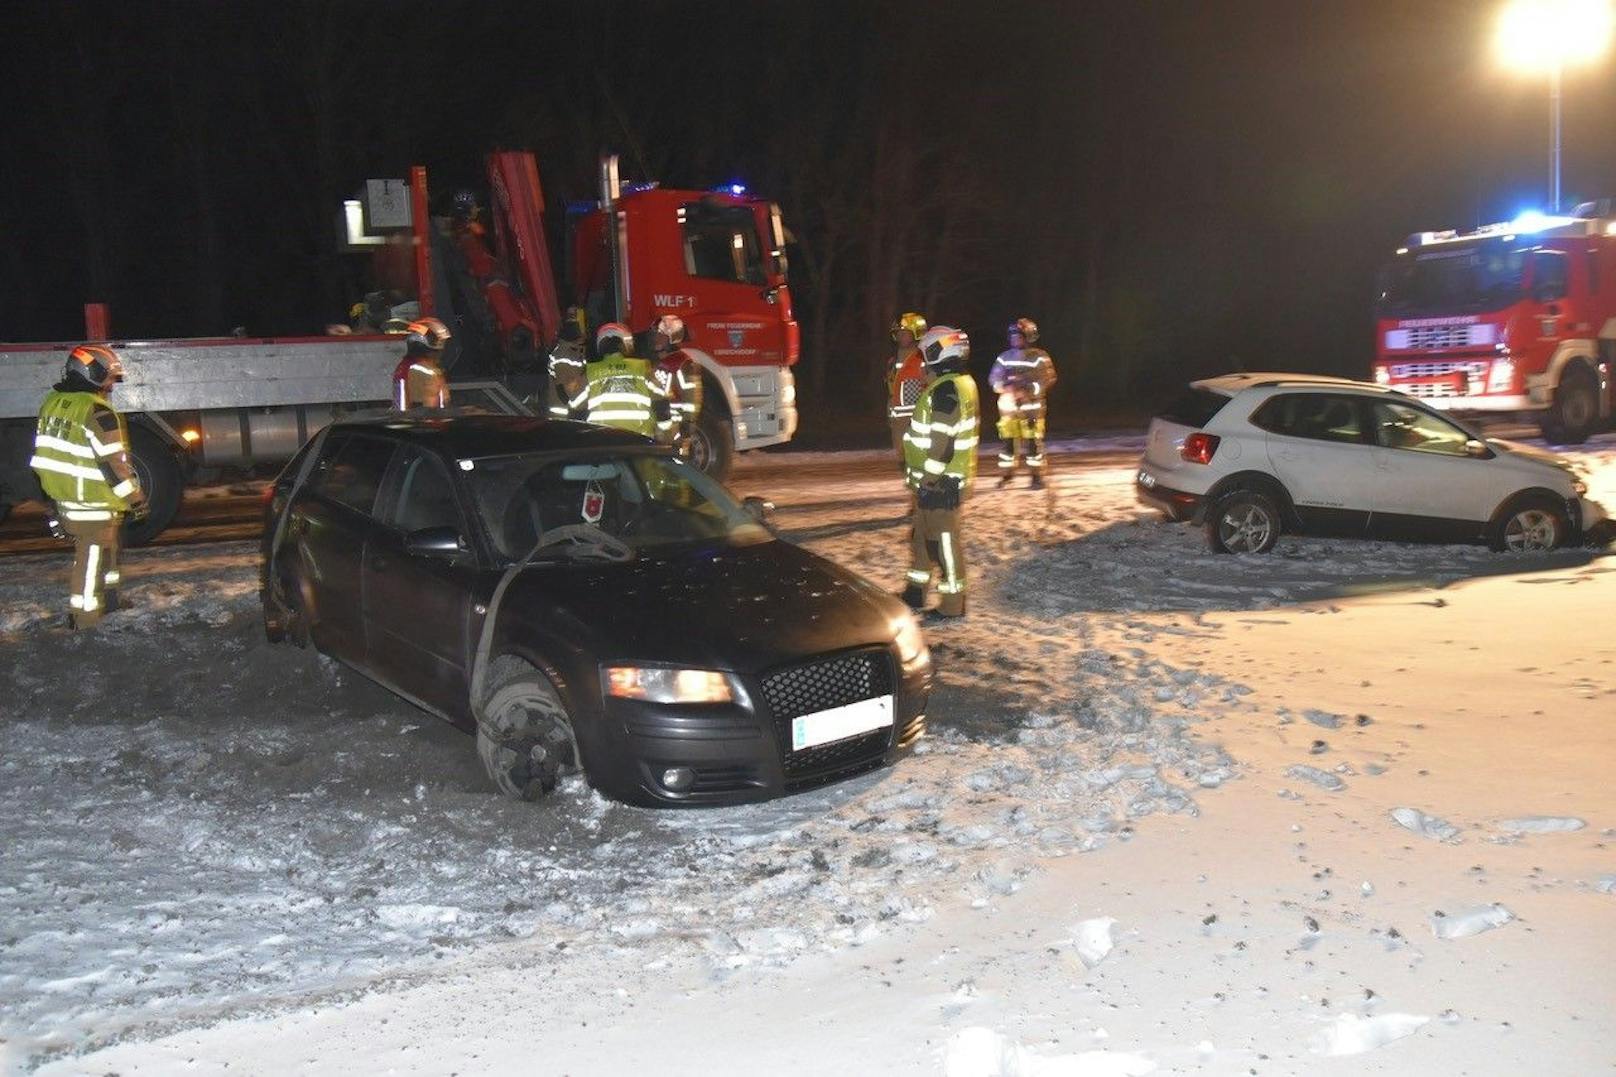 Die Verwundeten wurden ins Krankenhaus gebracht, die Feuerwehr musste alle drei Fahrzeuge bergen. 